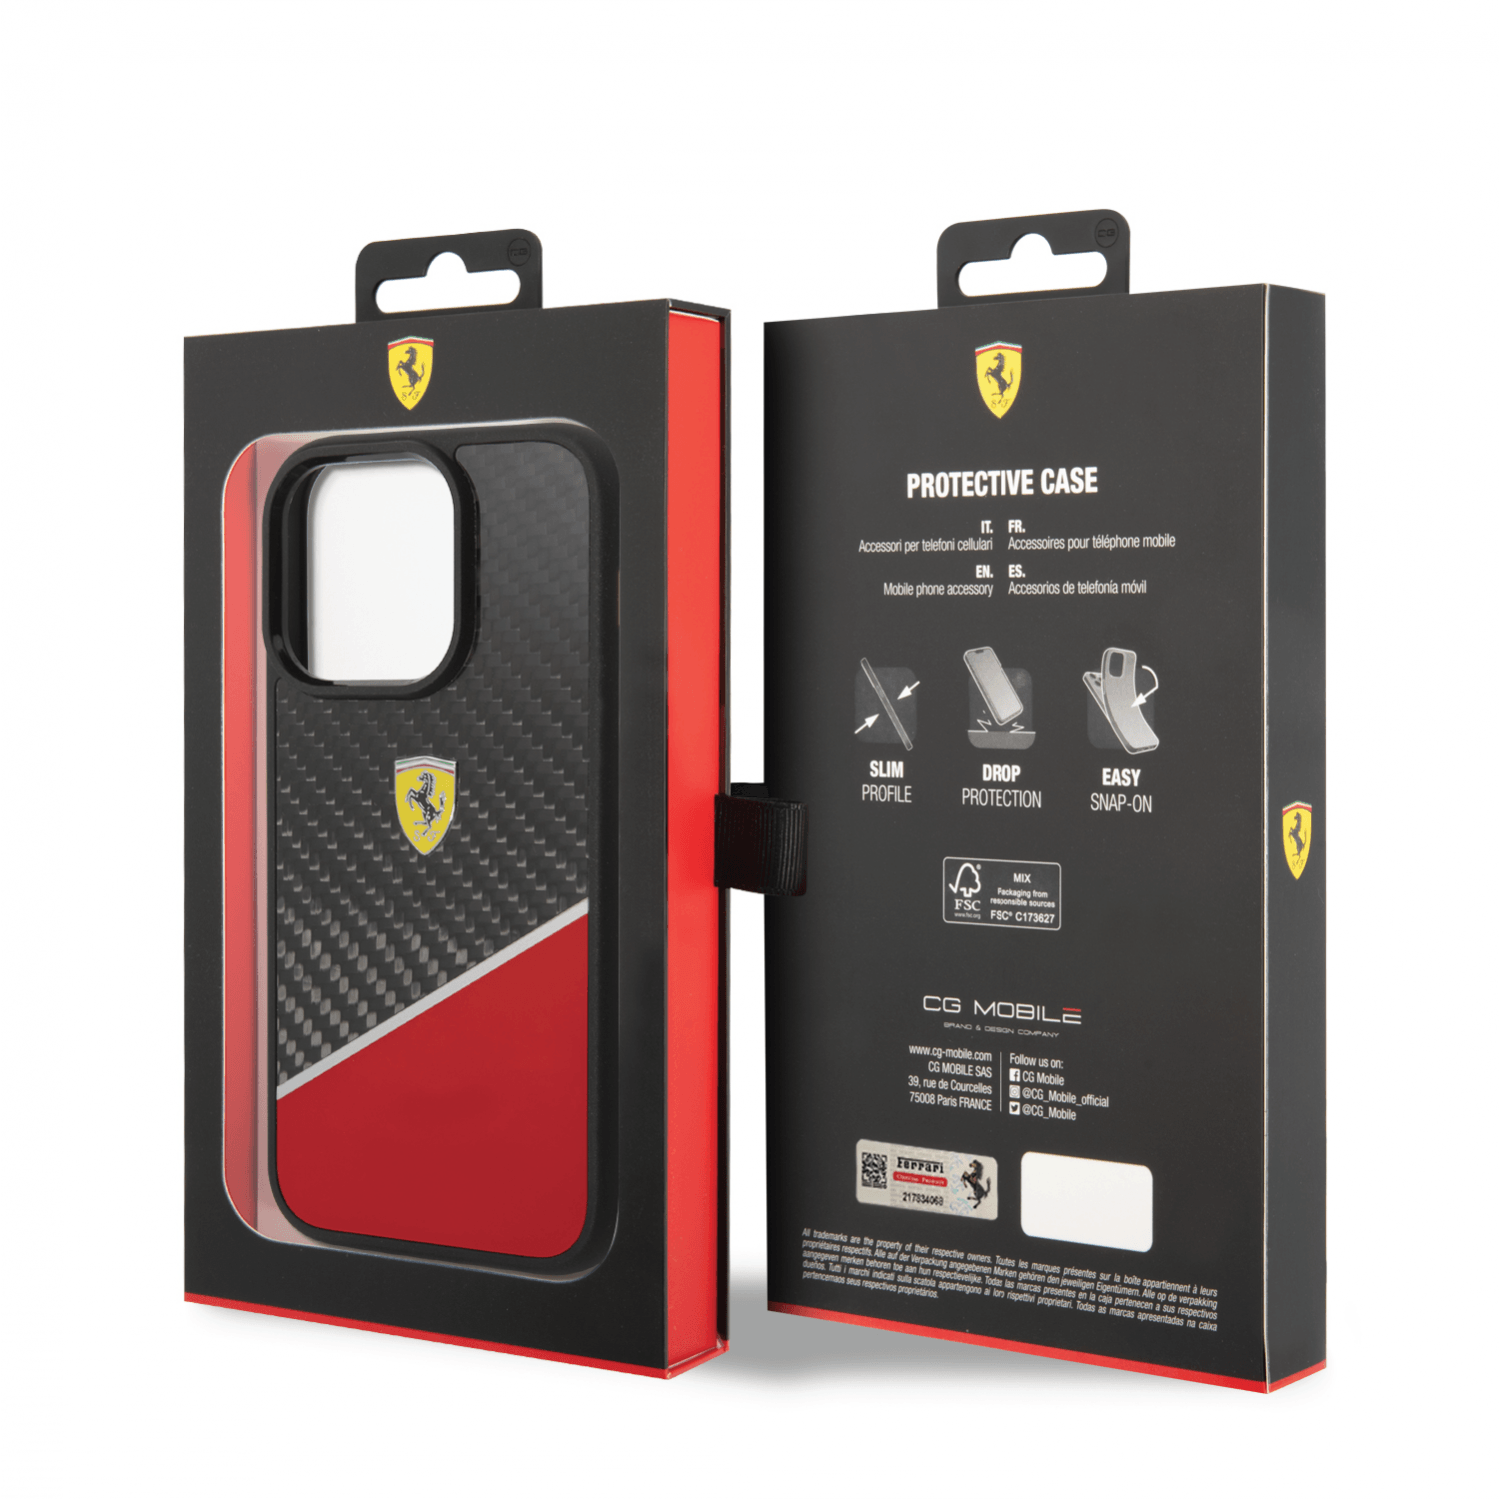 كفر ايفون 14 برو كربون وبولي كربون فيراري بايماتريال أحمر Ferrari Bimaterial Carbon Case & Polycarbonate